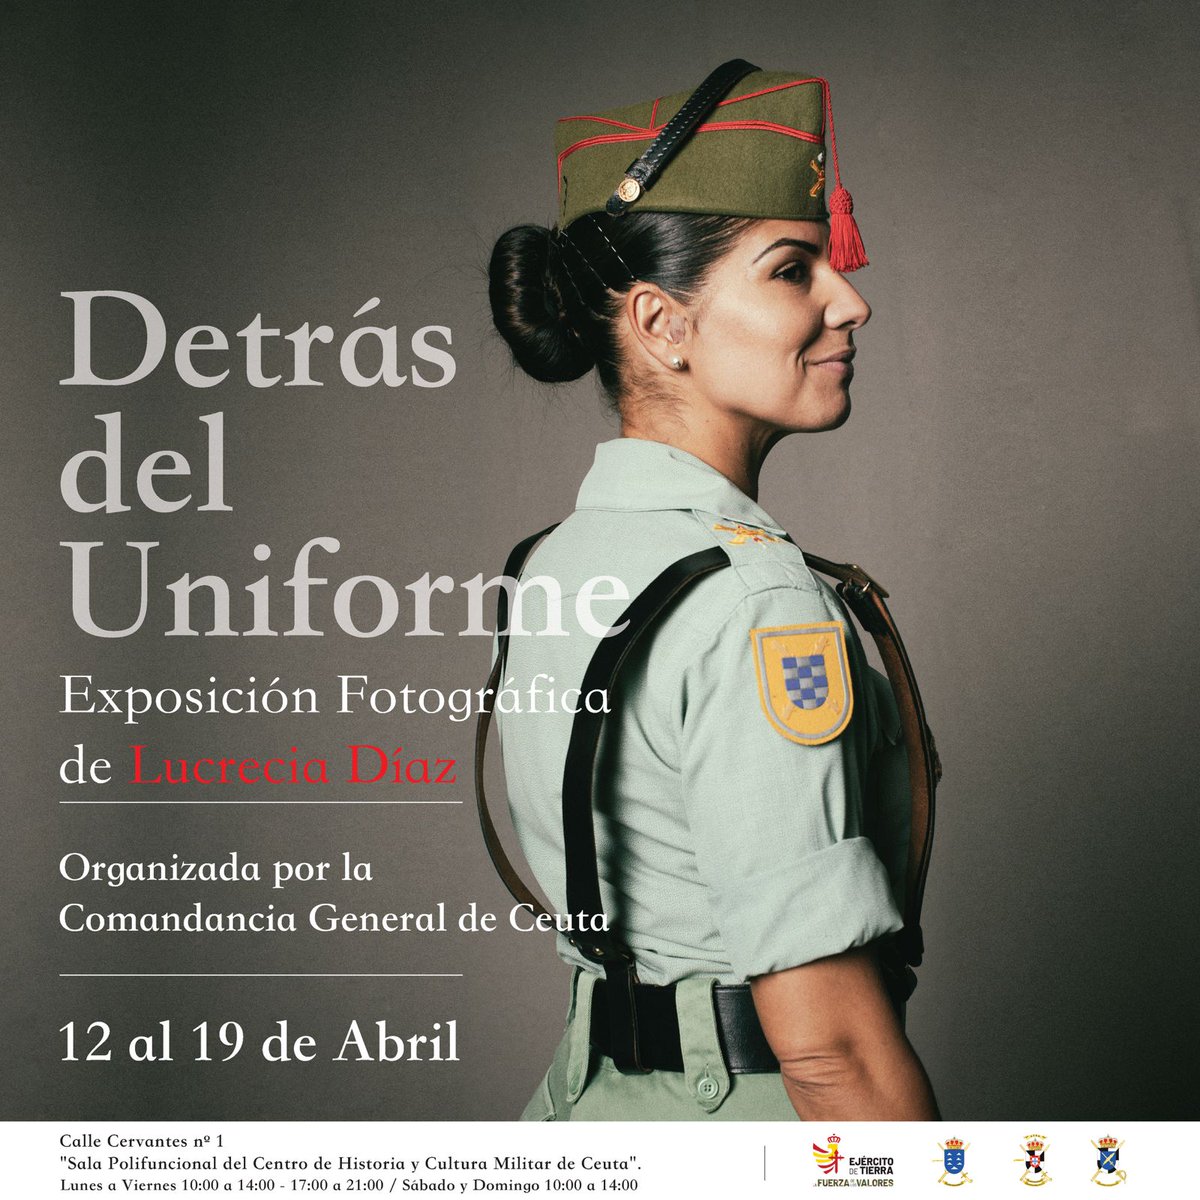 🇪🇸 Detrás del Uniforme.
#Legión #LaLegión #Legionario #FFAA #Uniforme #Militar